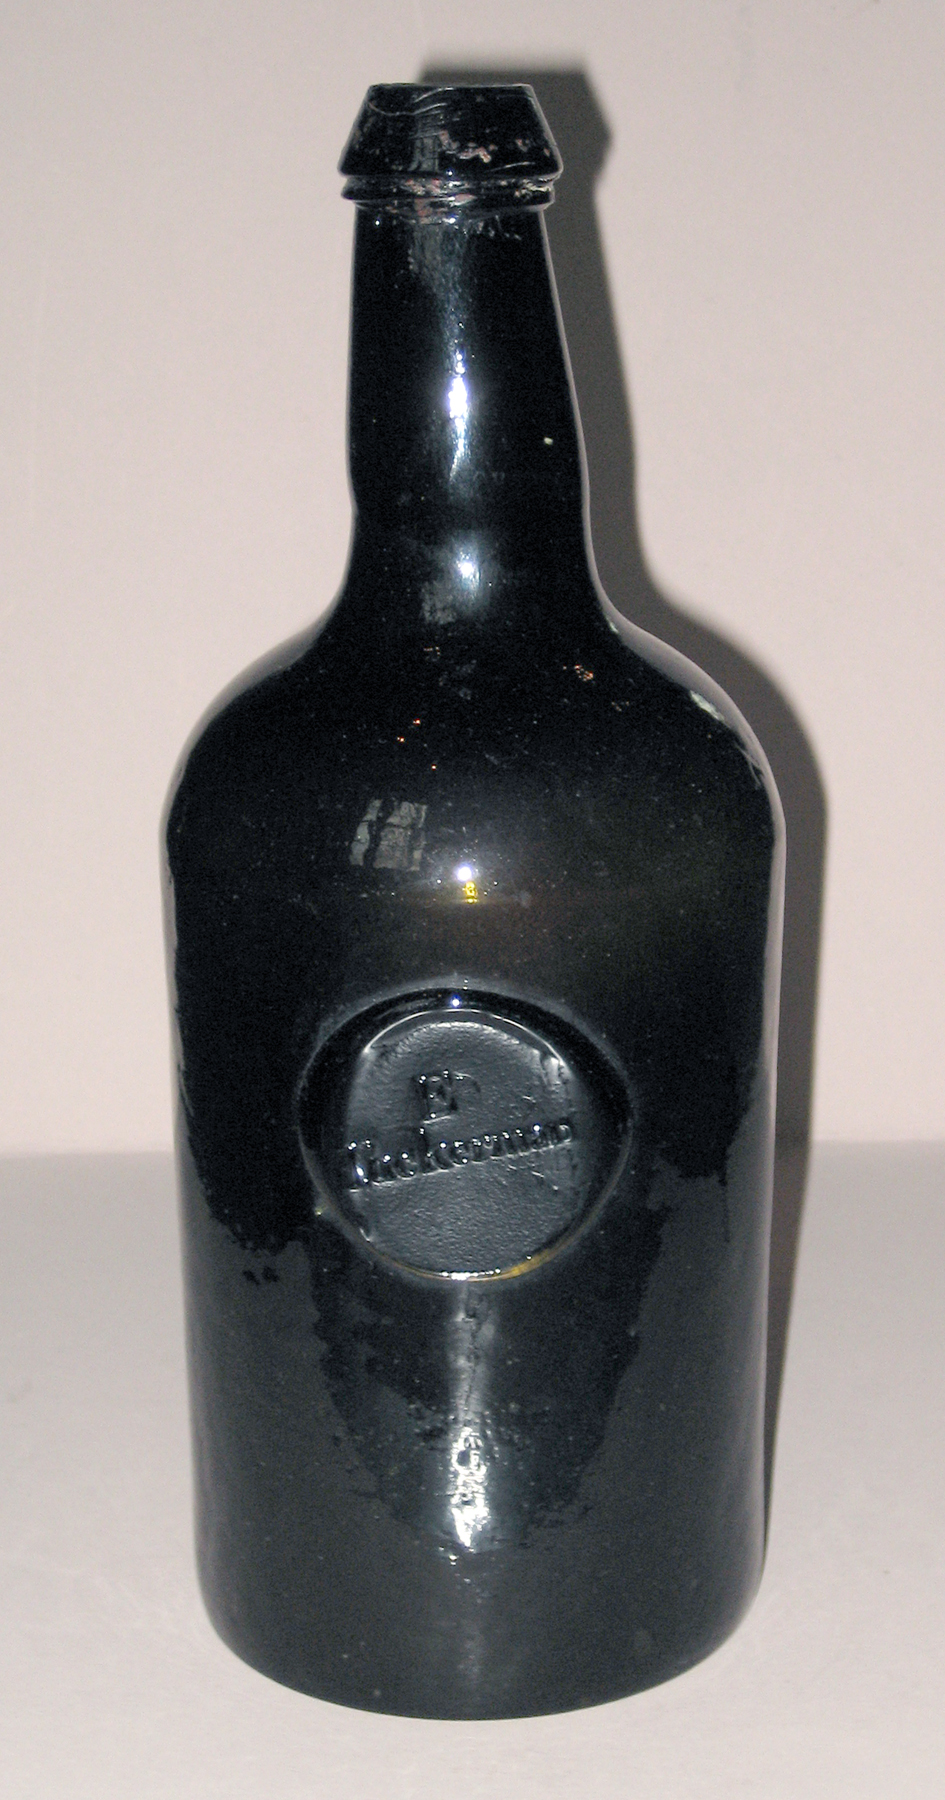 1961.0966.001 Wine bottle